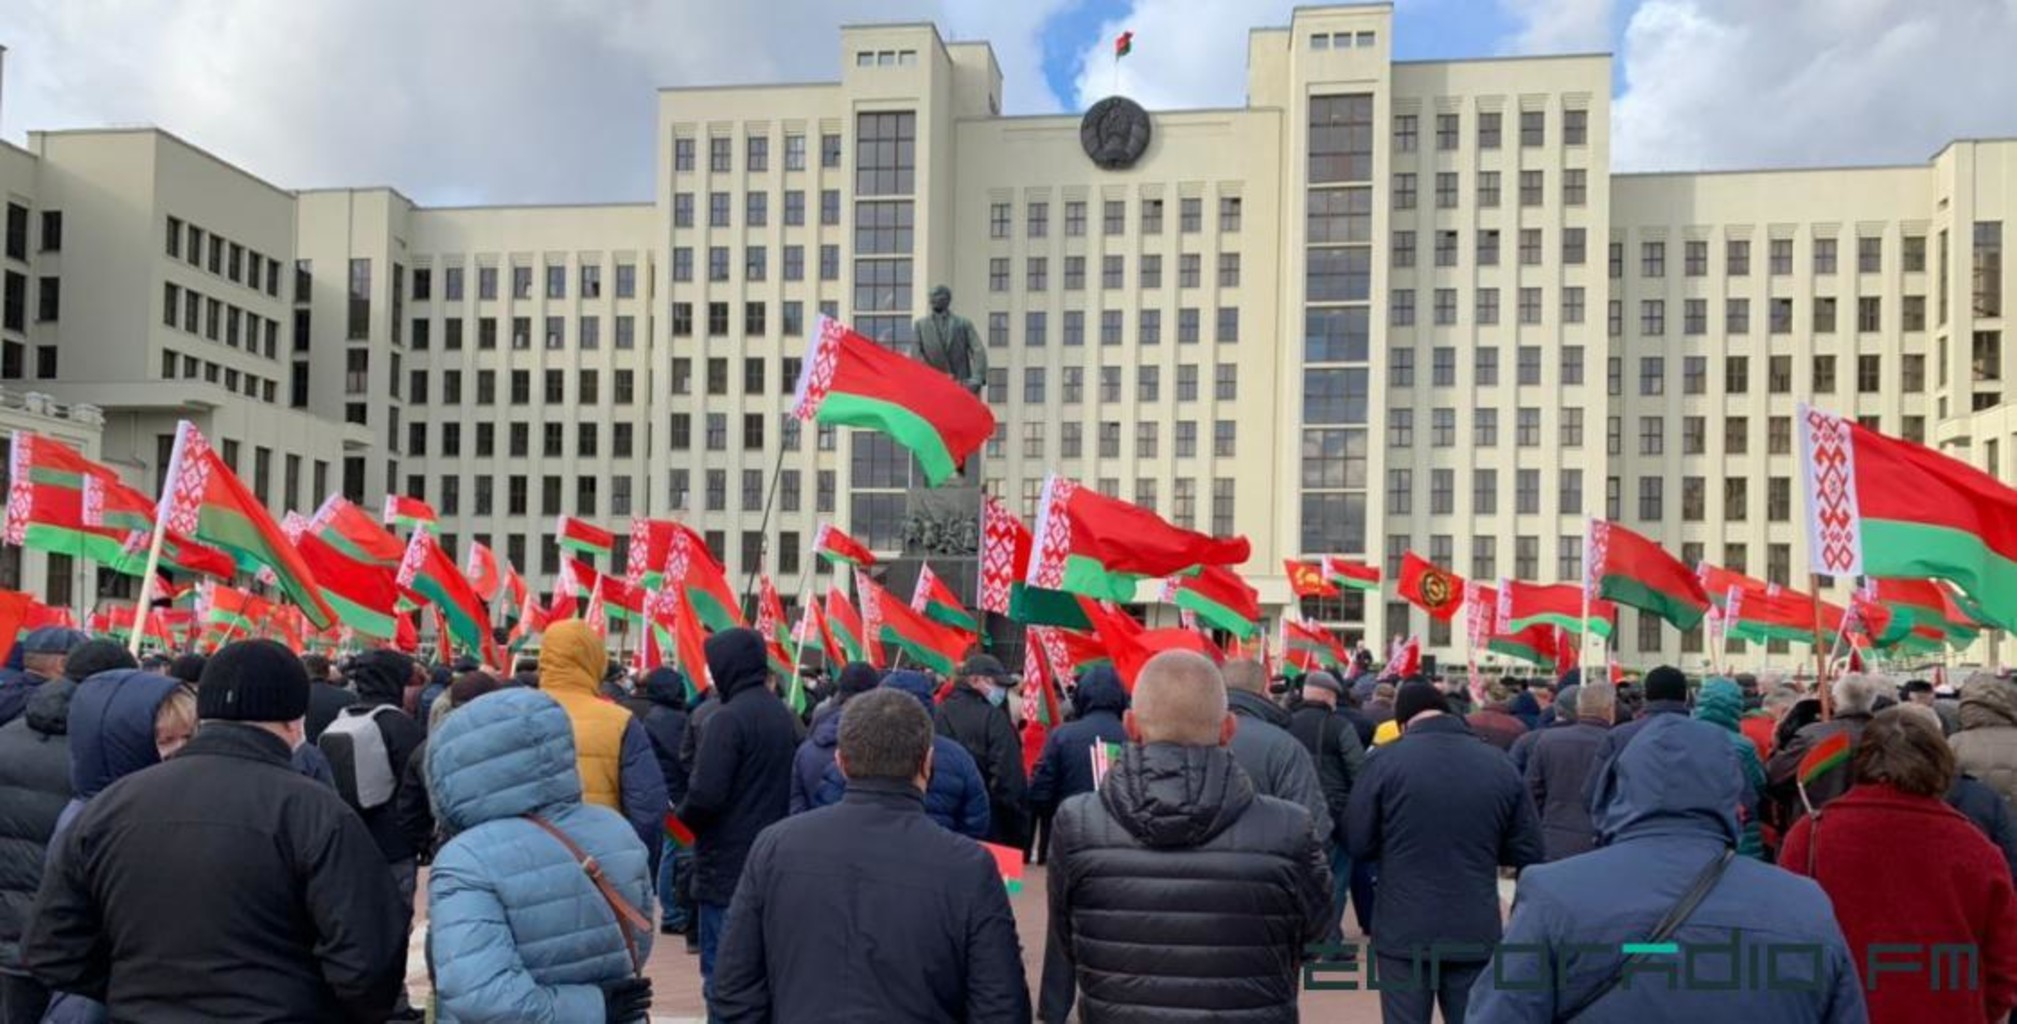 Собрать митинг. Митинг в поддержку Лукашенко. Лукашенко на митинге. Митинг в поддержку Лукашенко вид сверху 2021 на мосту. Лукашенко митинг на заводе фото.